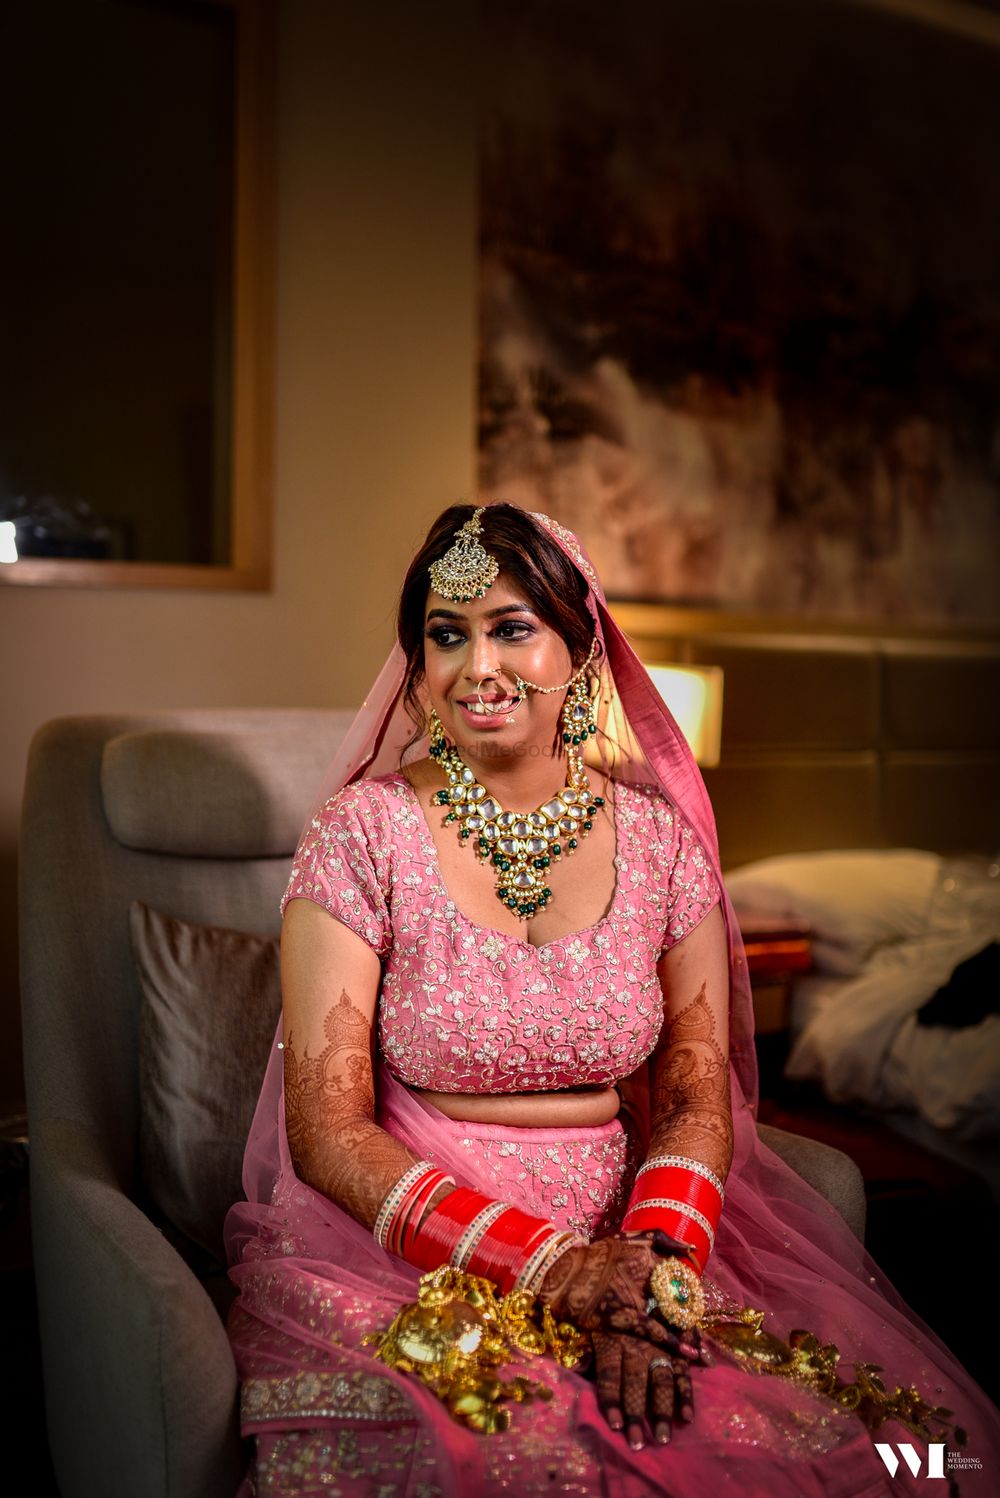 Photo From Ankita & Karan - By The Wedding Momento